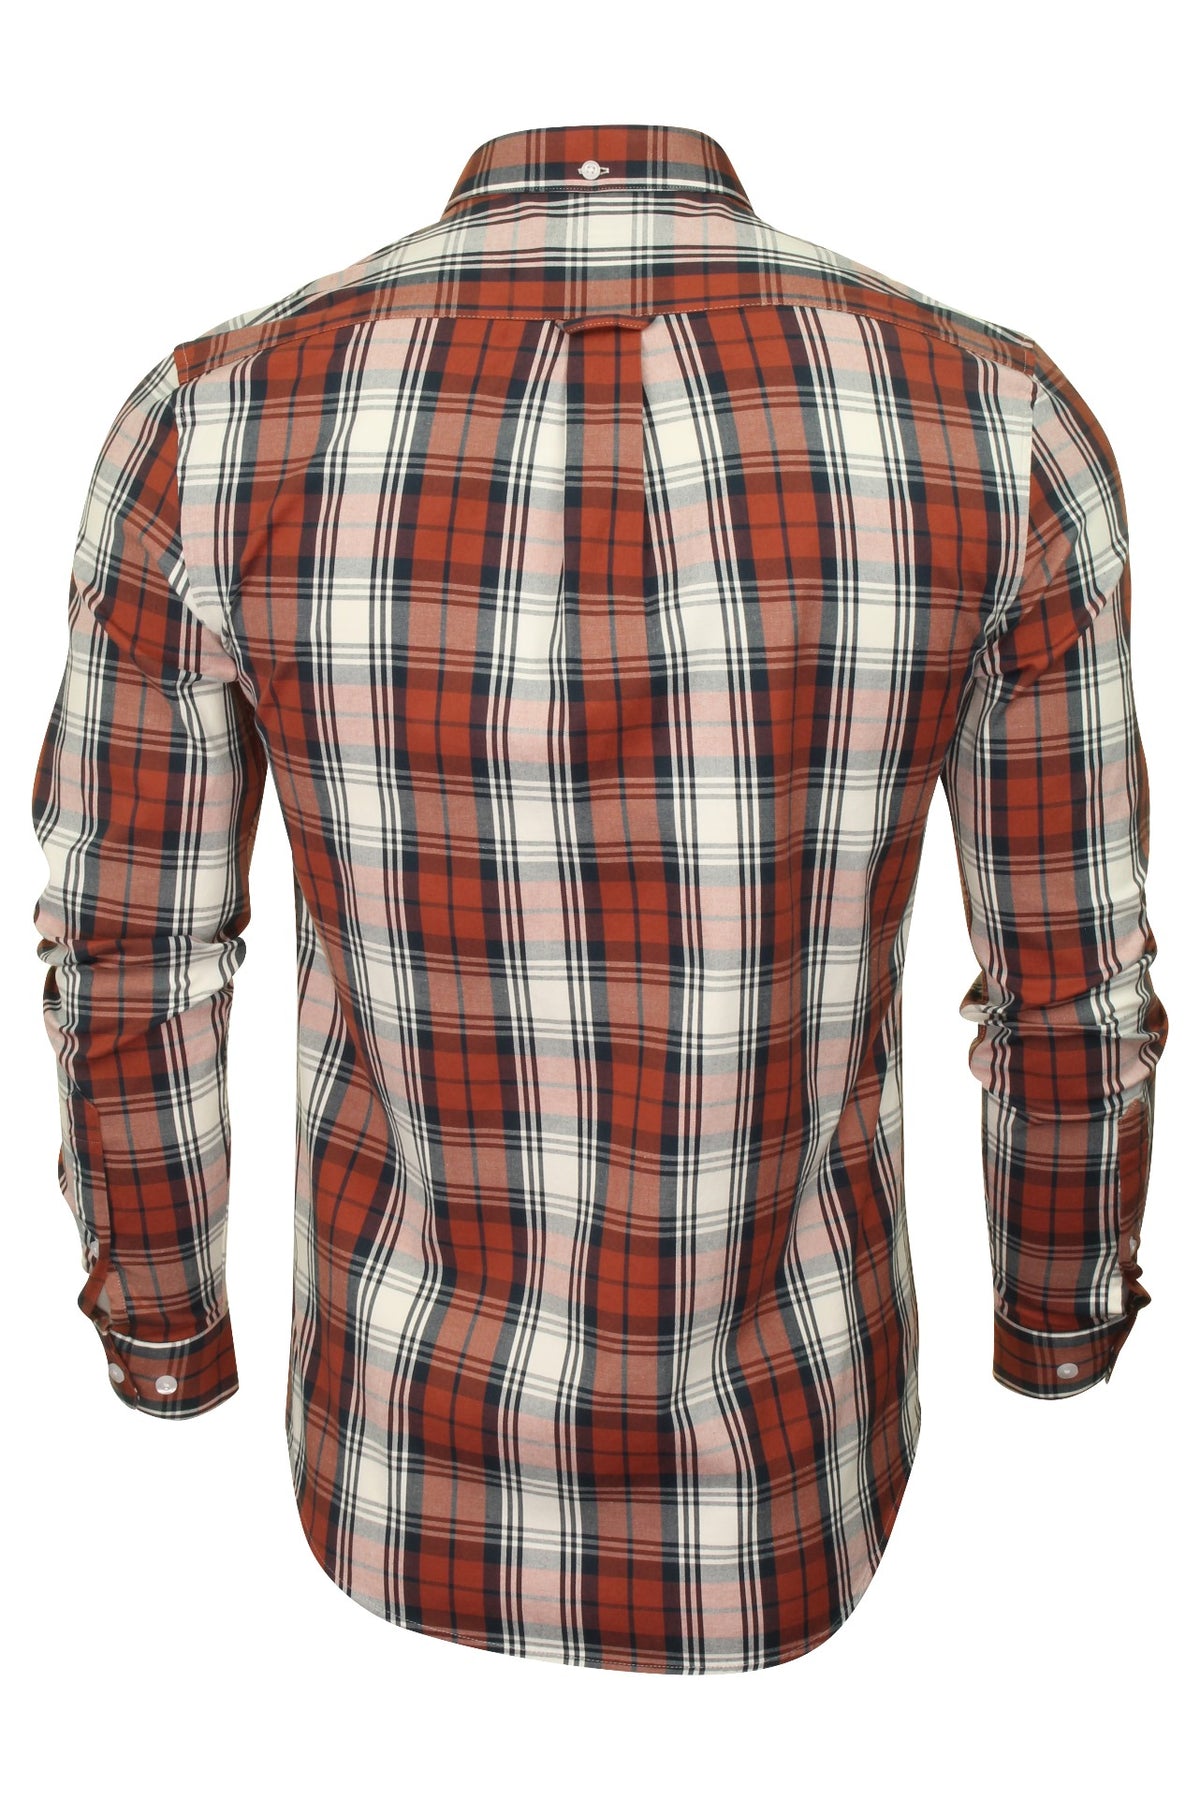 Farah Mens Check Shirt Brewer Blackwatch - Long Sleeved (Russet, XXL), 03, F4WF80C0GP, Russet